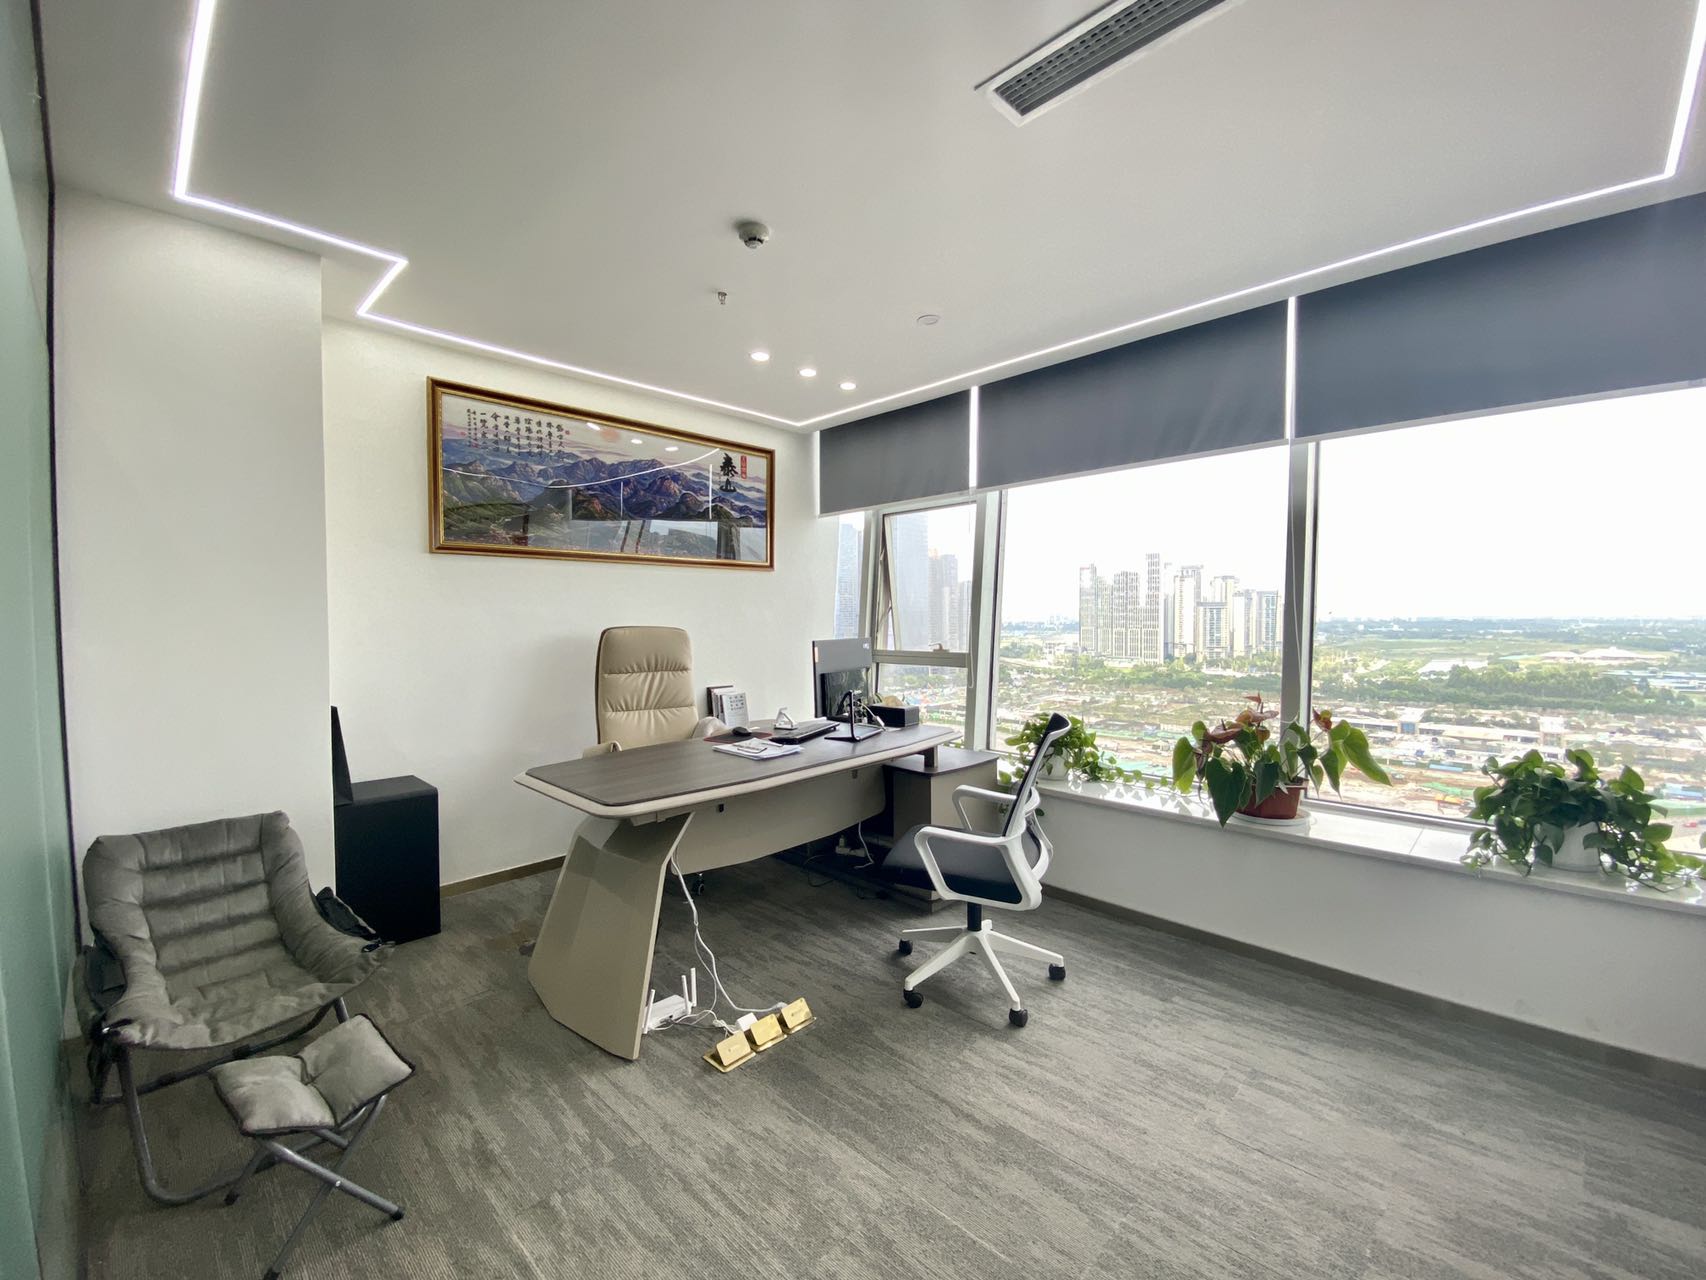 高新区环球中心精装办公室带家具 120平 3隔间8工位